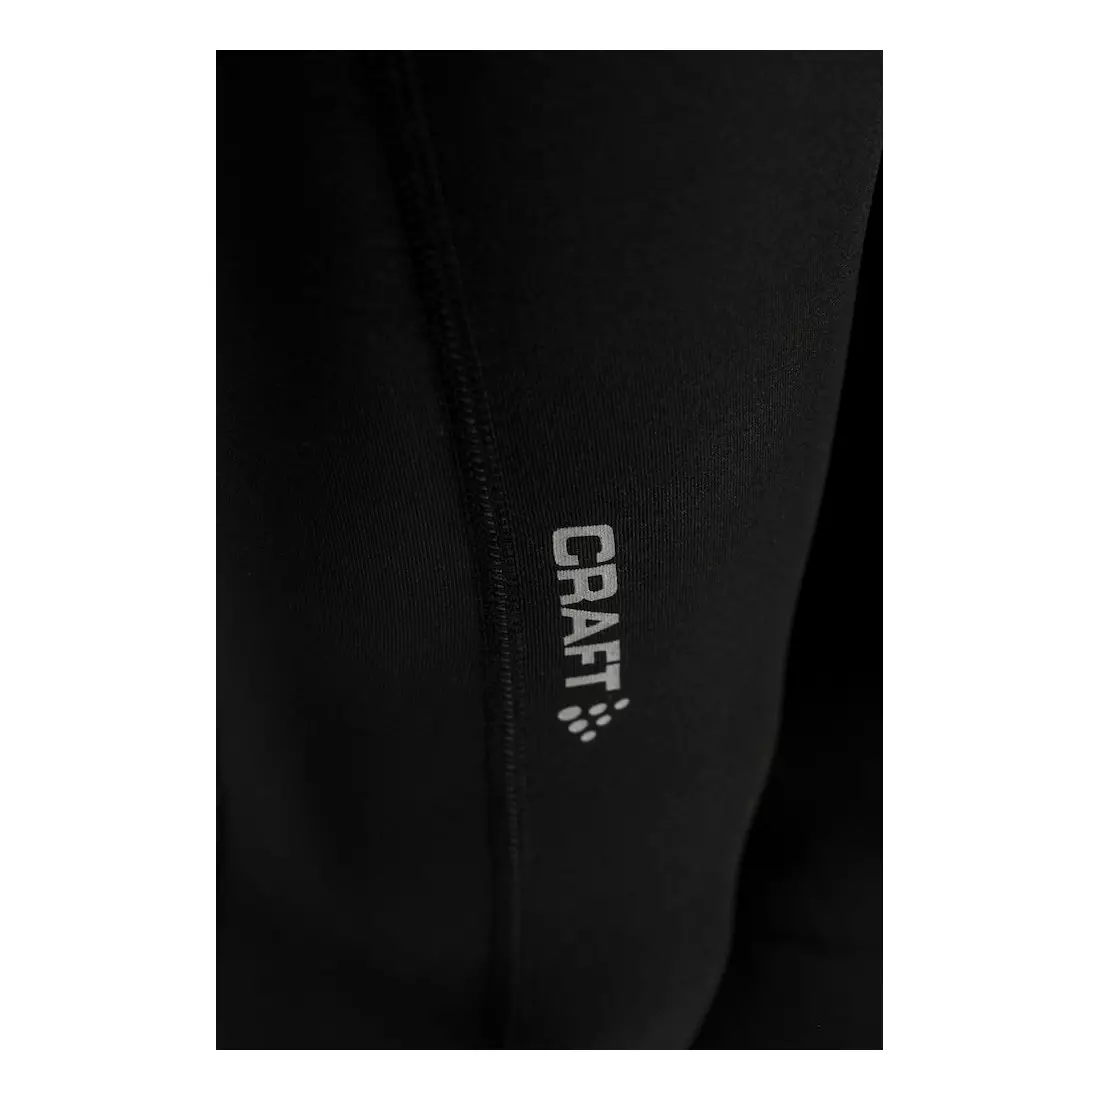 CRAFT RADIATE men's running pants, uninsulated, black 1905388-999000